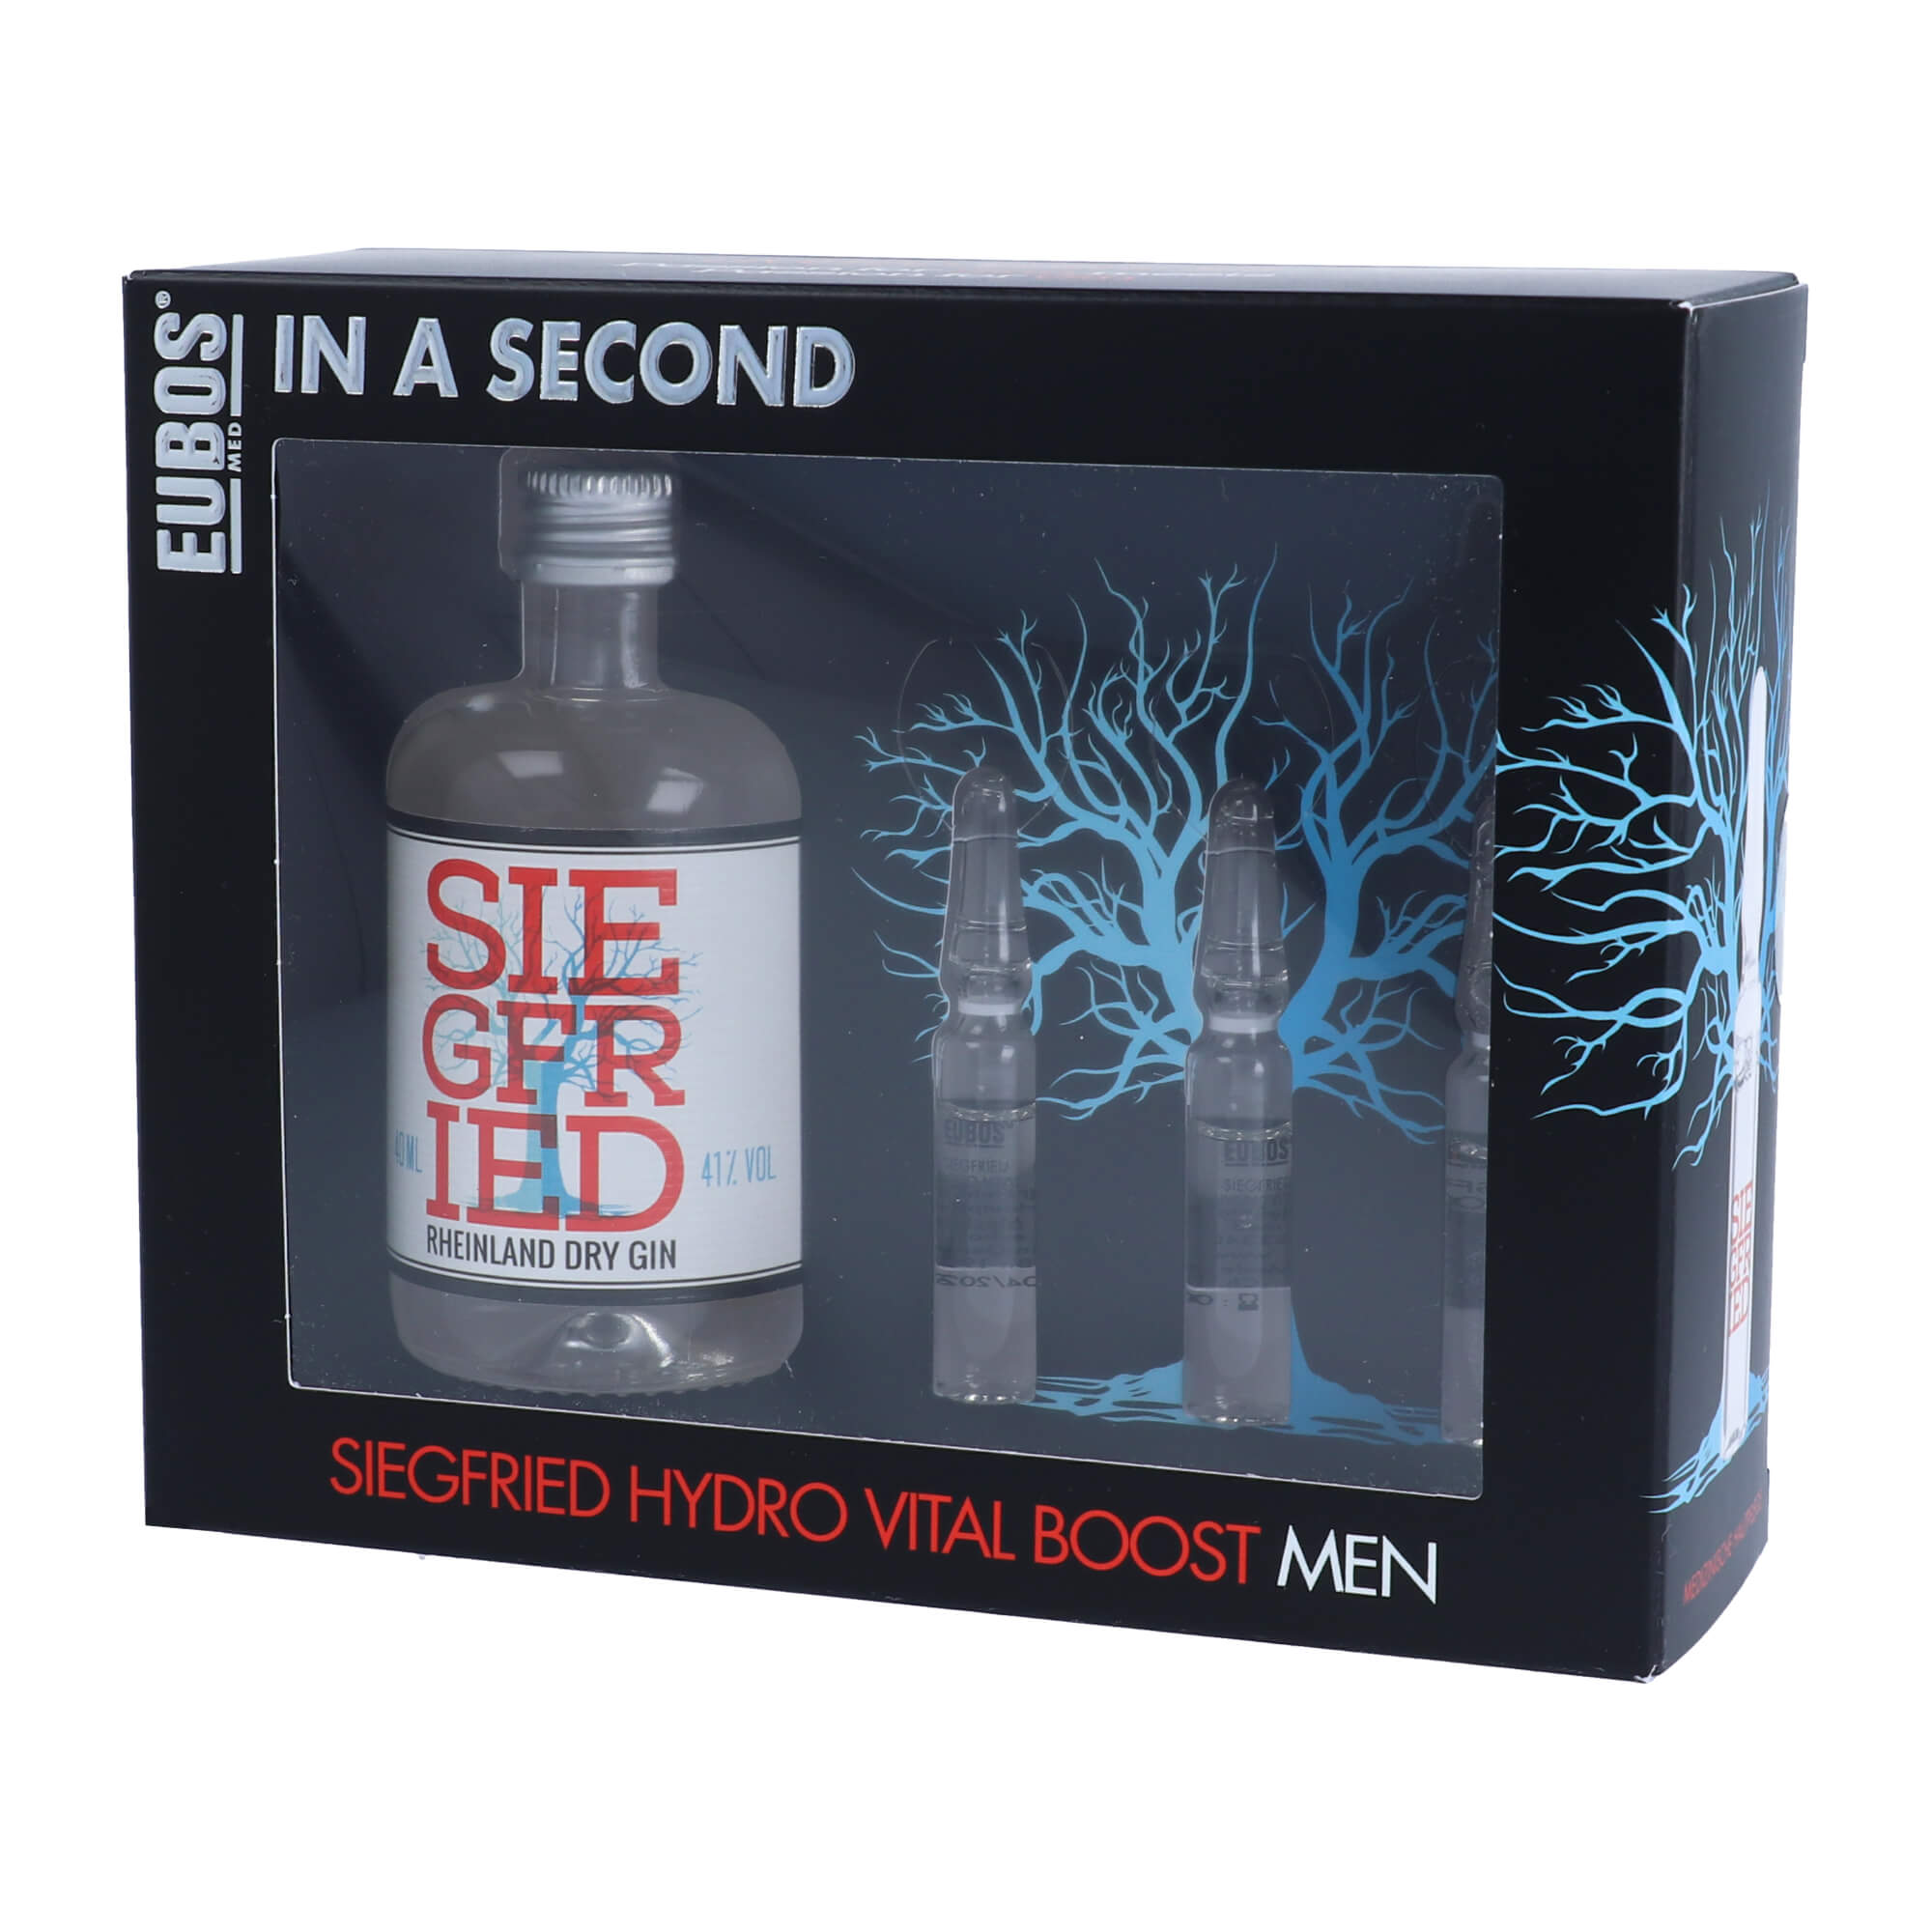 Feuchtigkeitskur für Männerhaut mit Siegfried Premium Dry Gin.